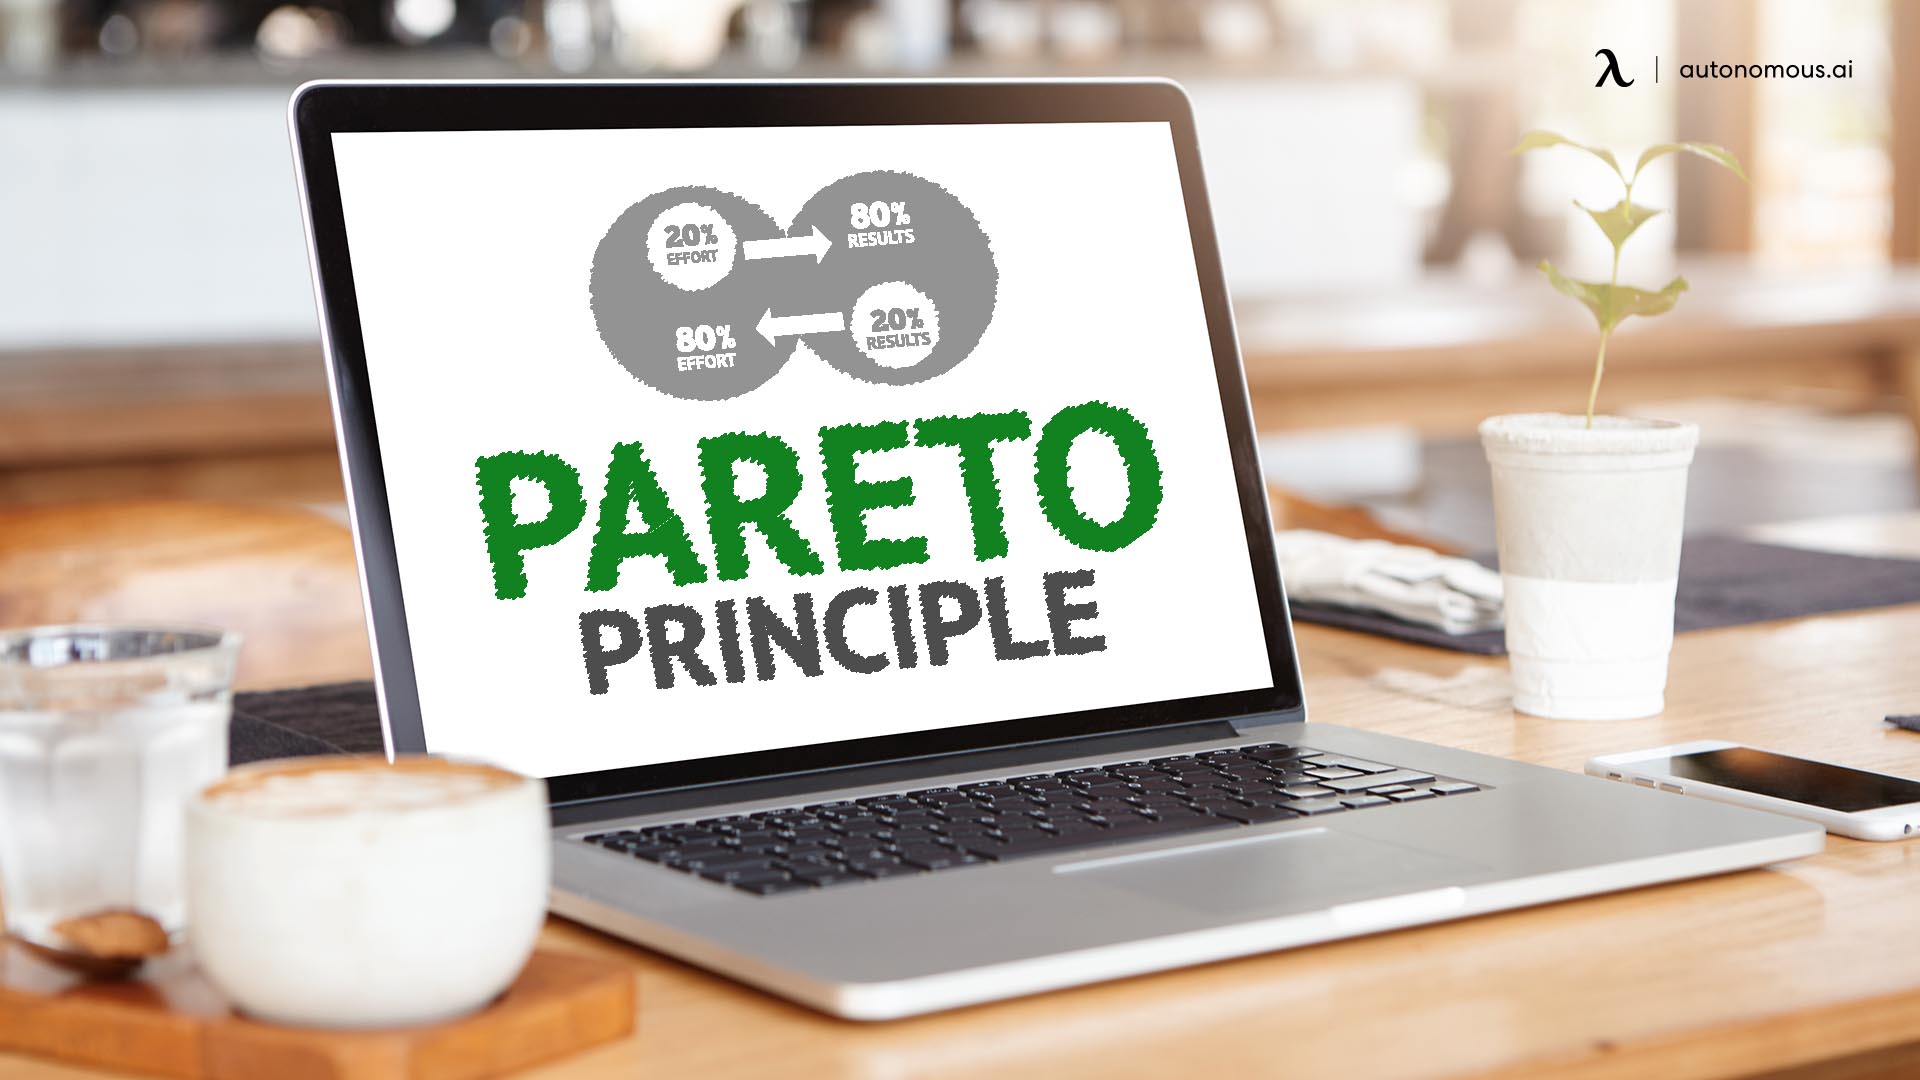 The Pareto principle